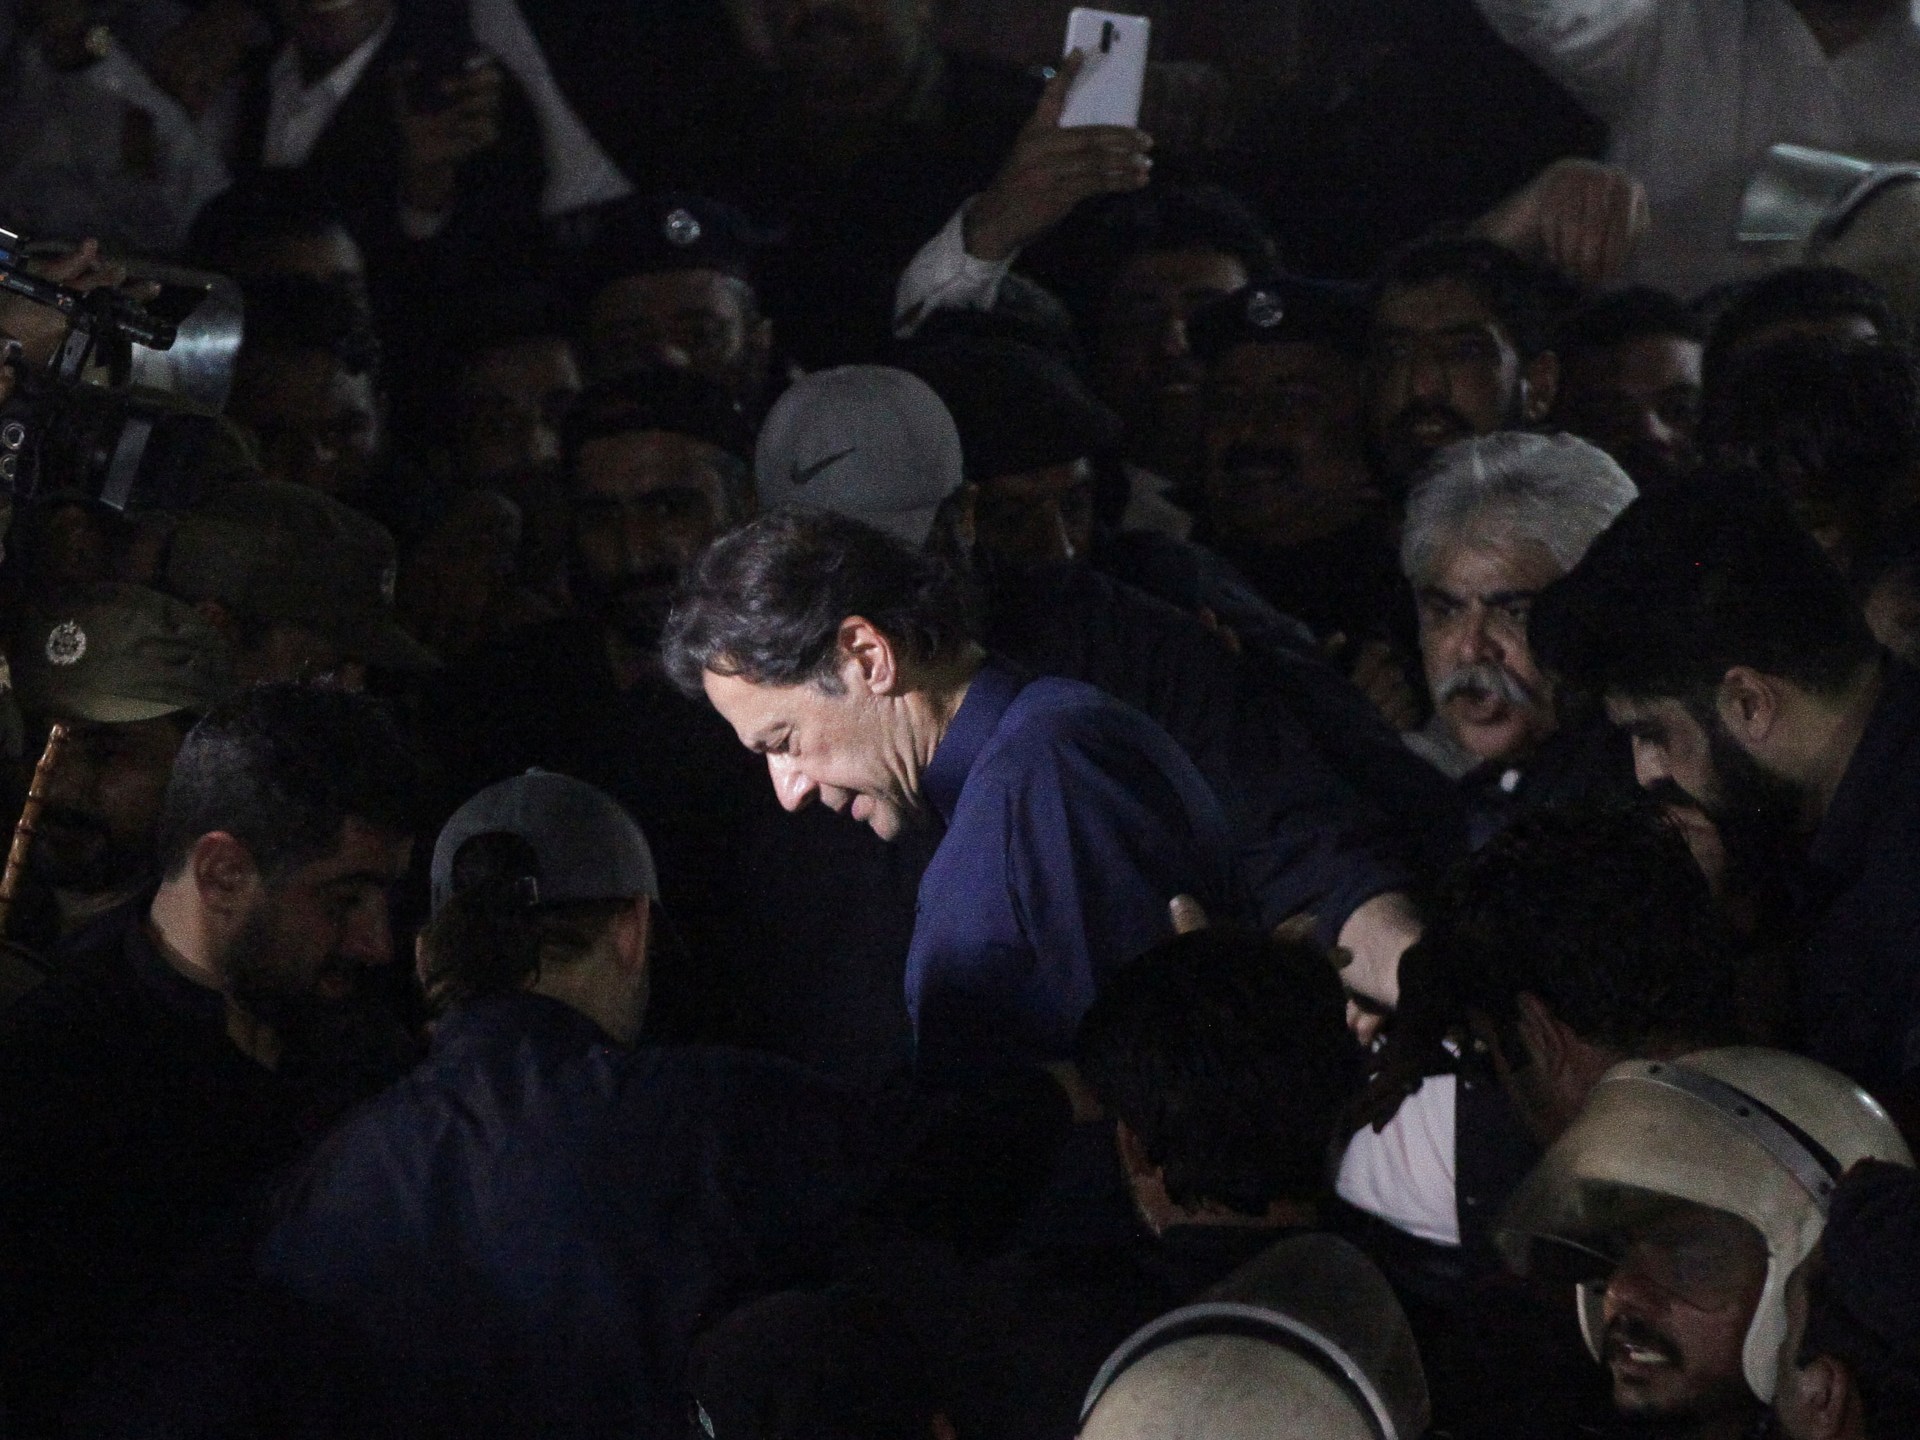 إطلاق الغاز المسيل للدموع خارج مقر إقامة رئيس الوزراء السابق عمران خان في باكستان |  عمران خان نيوز